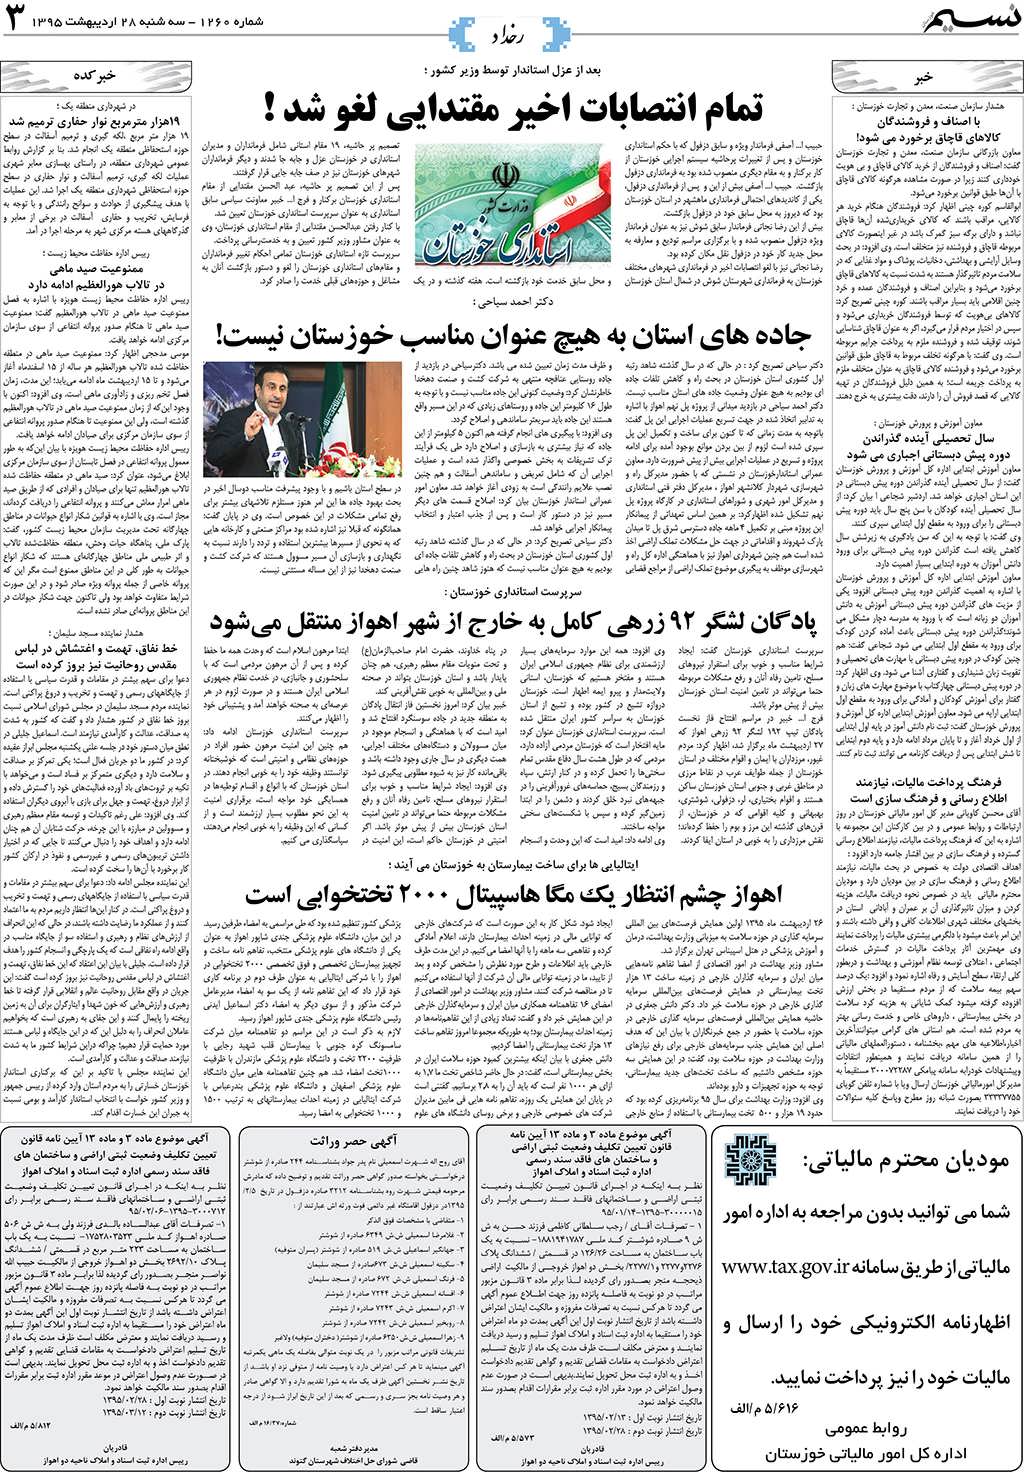 صفحه رخداد روزنامه نسیم شماره 1260